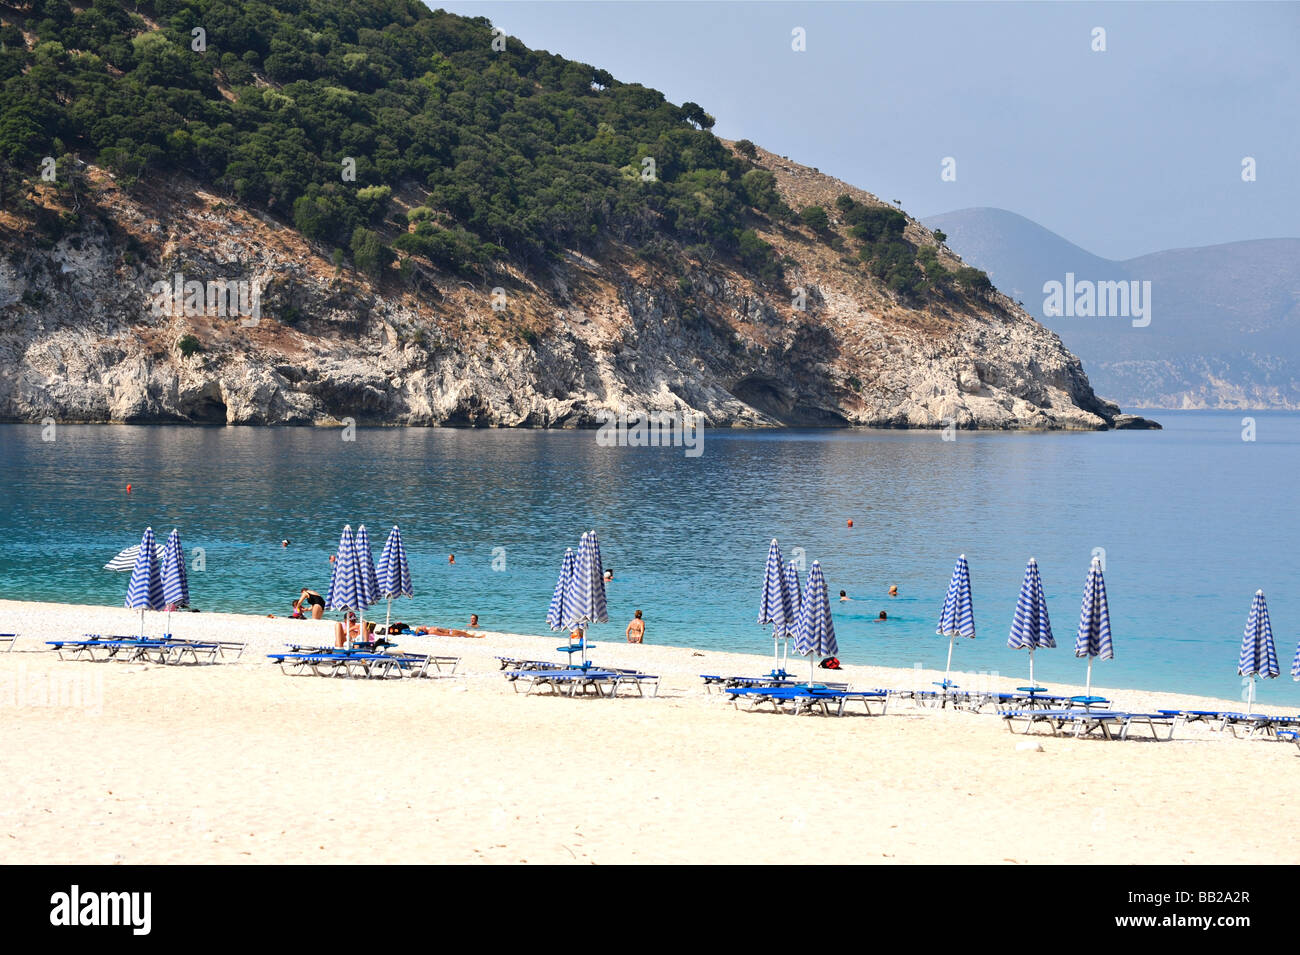 Incredibile spiaggia di Myrtos in Cefalonia, Grecia - ha detto di essere la spiaggia più bella in Europa Foto Stock